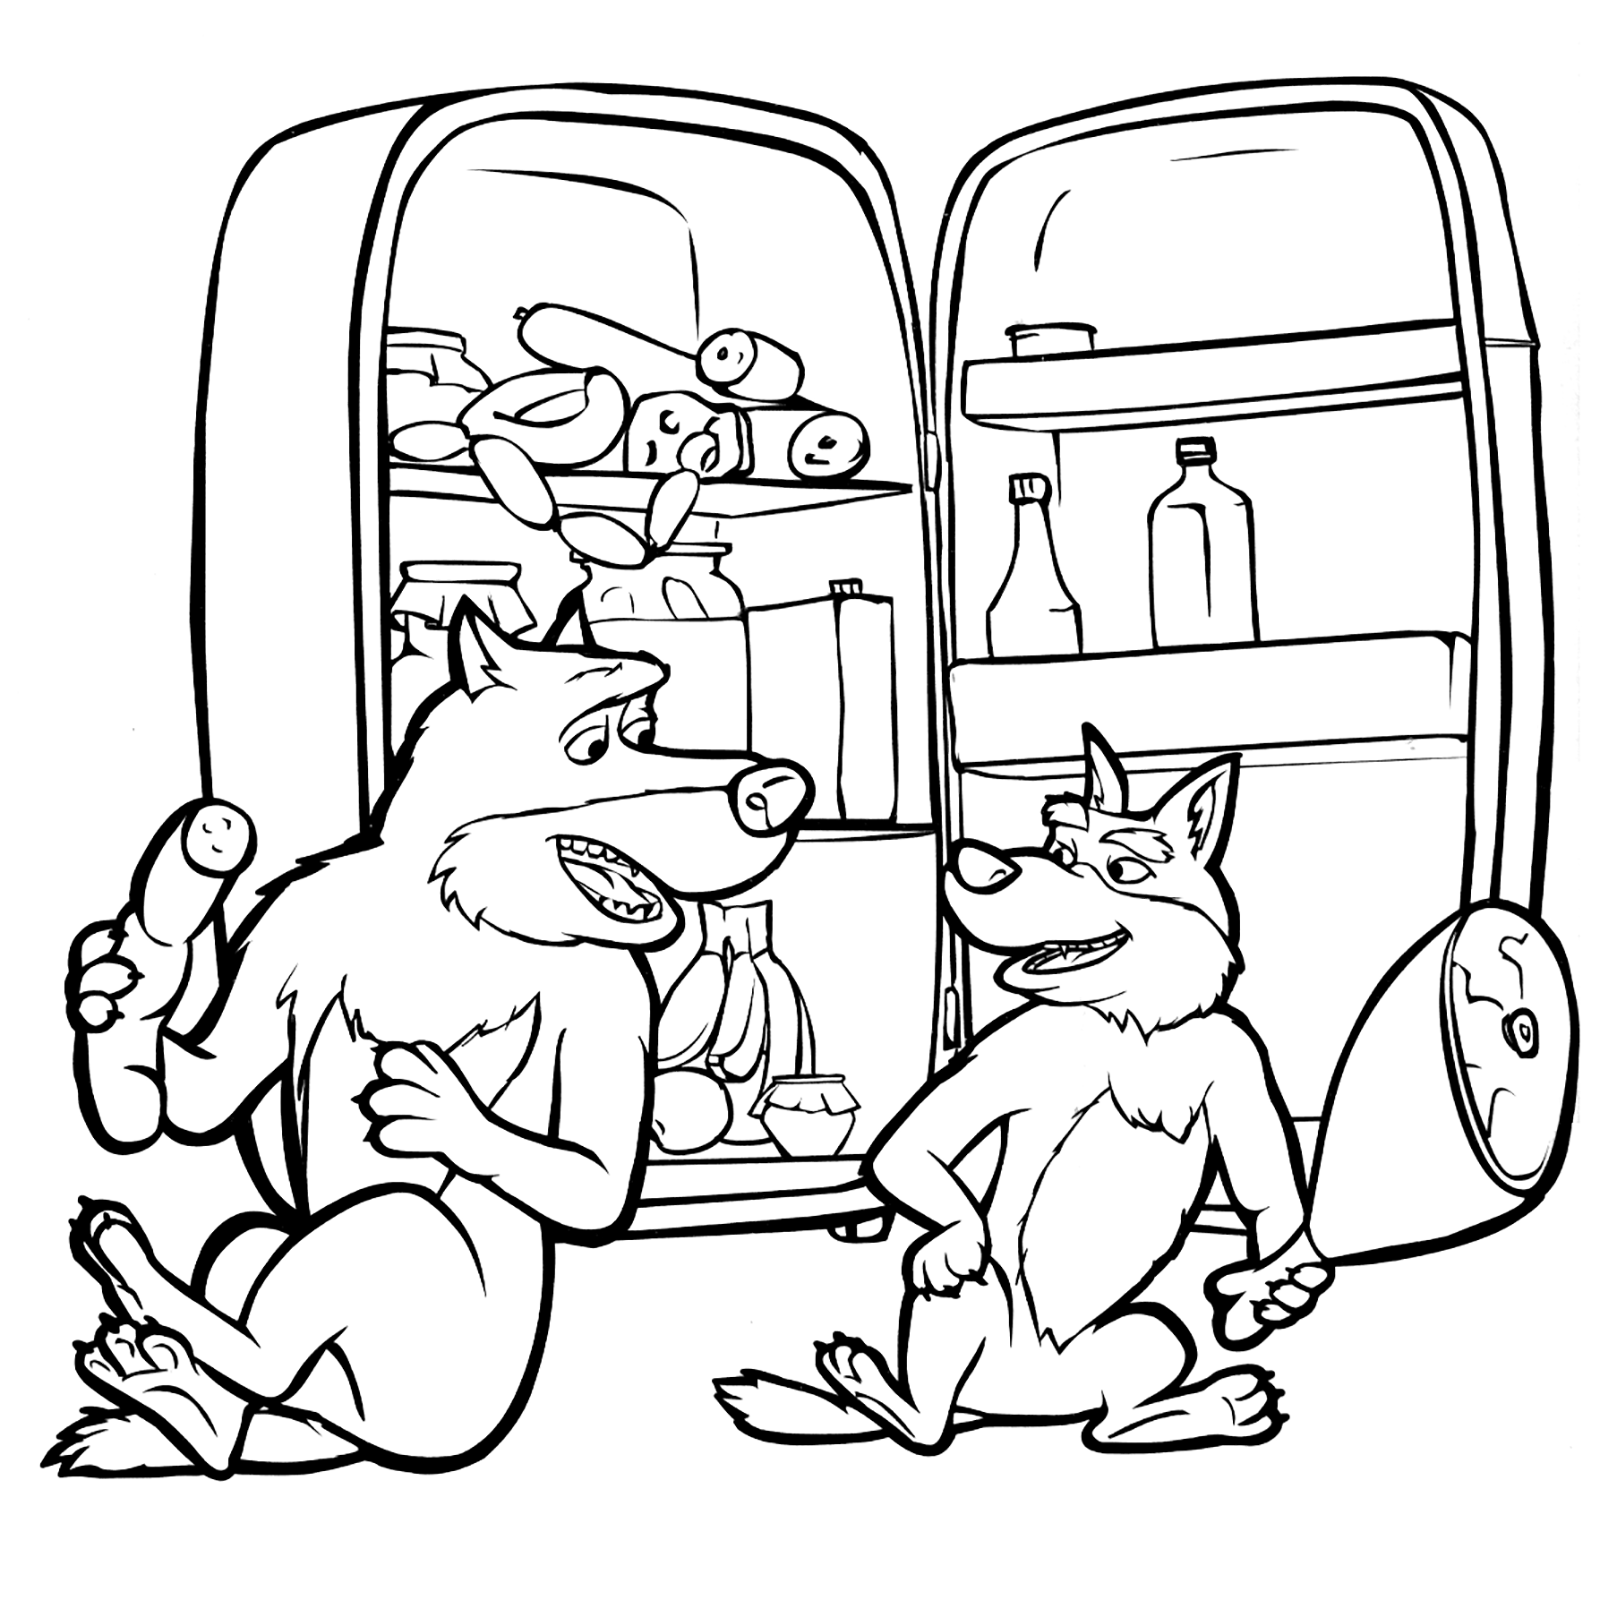 Masha e Orso - I lupi felici mangiano tutto quello che trovano nel frigorifero